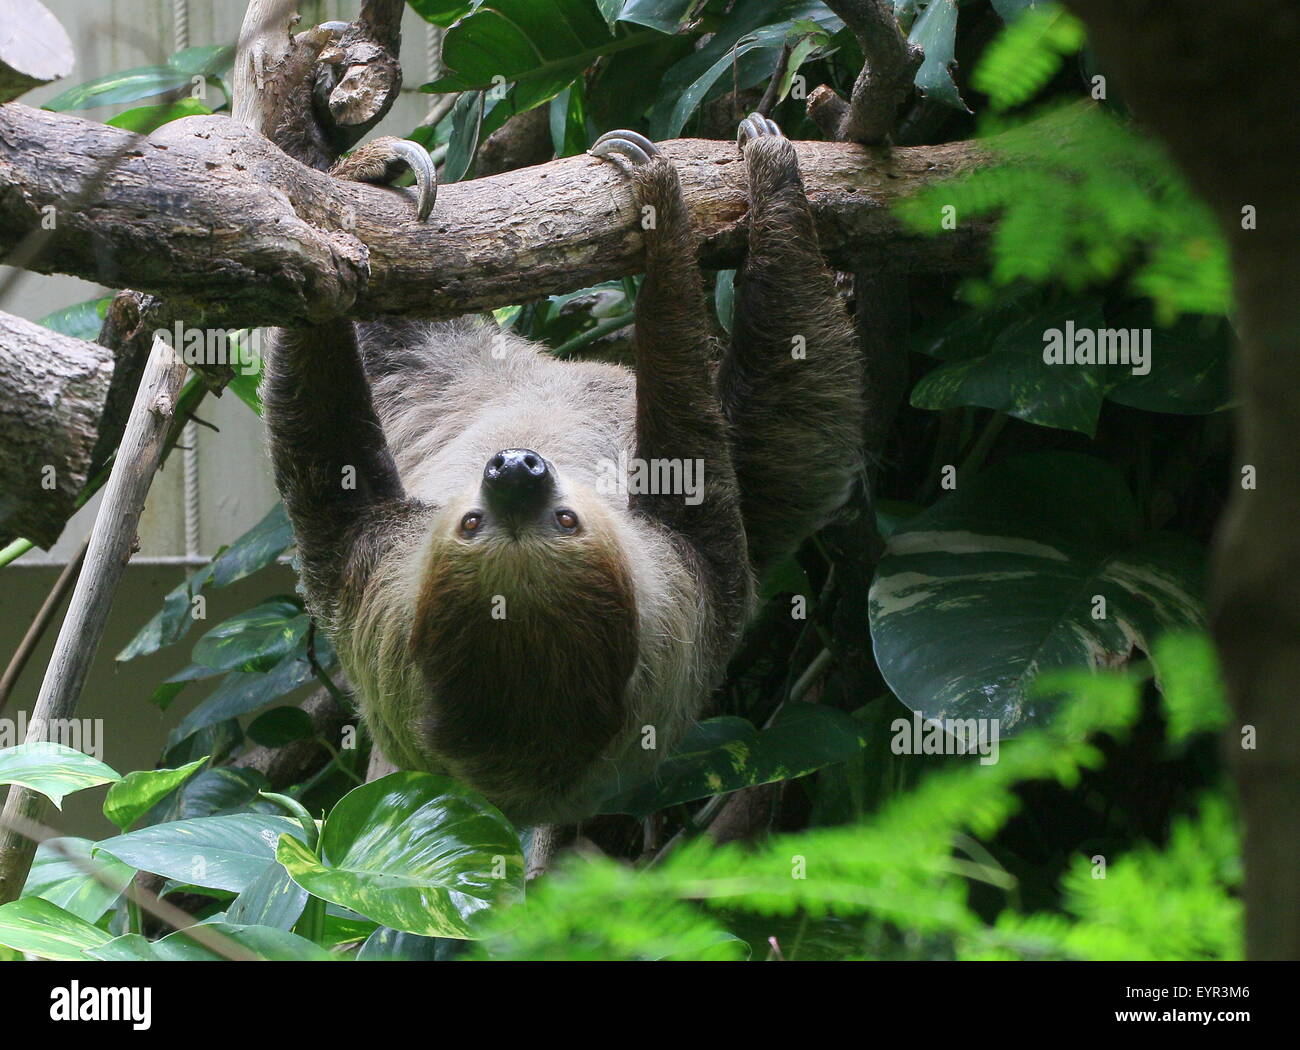 L'Amérique du Sud deux orteils, sloth Linné ou dans le sud de deux doigts (Choloepus didactylus) paresseux au Zoo Dierenpark emmen, Pays-Bas Banque D'Images